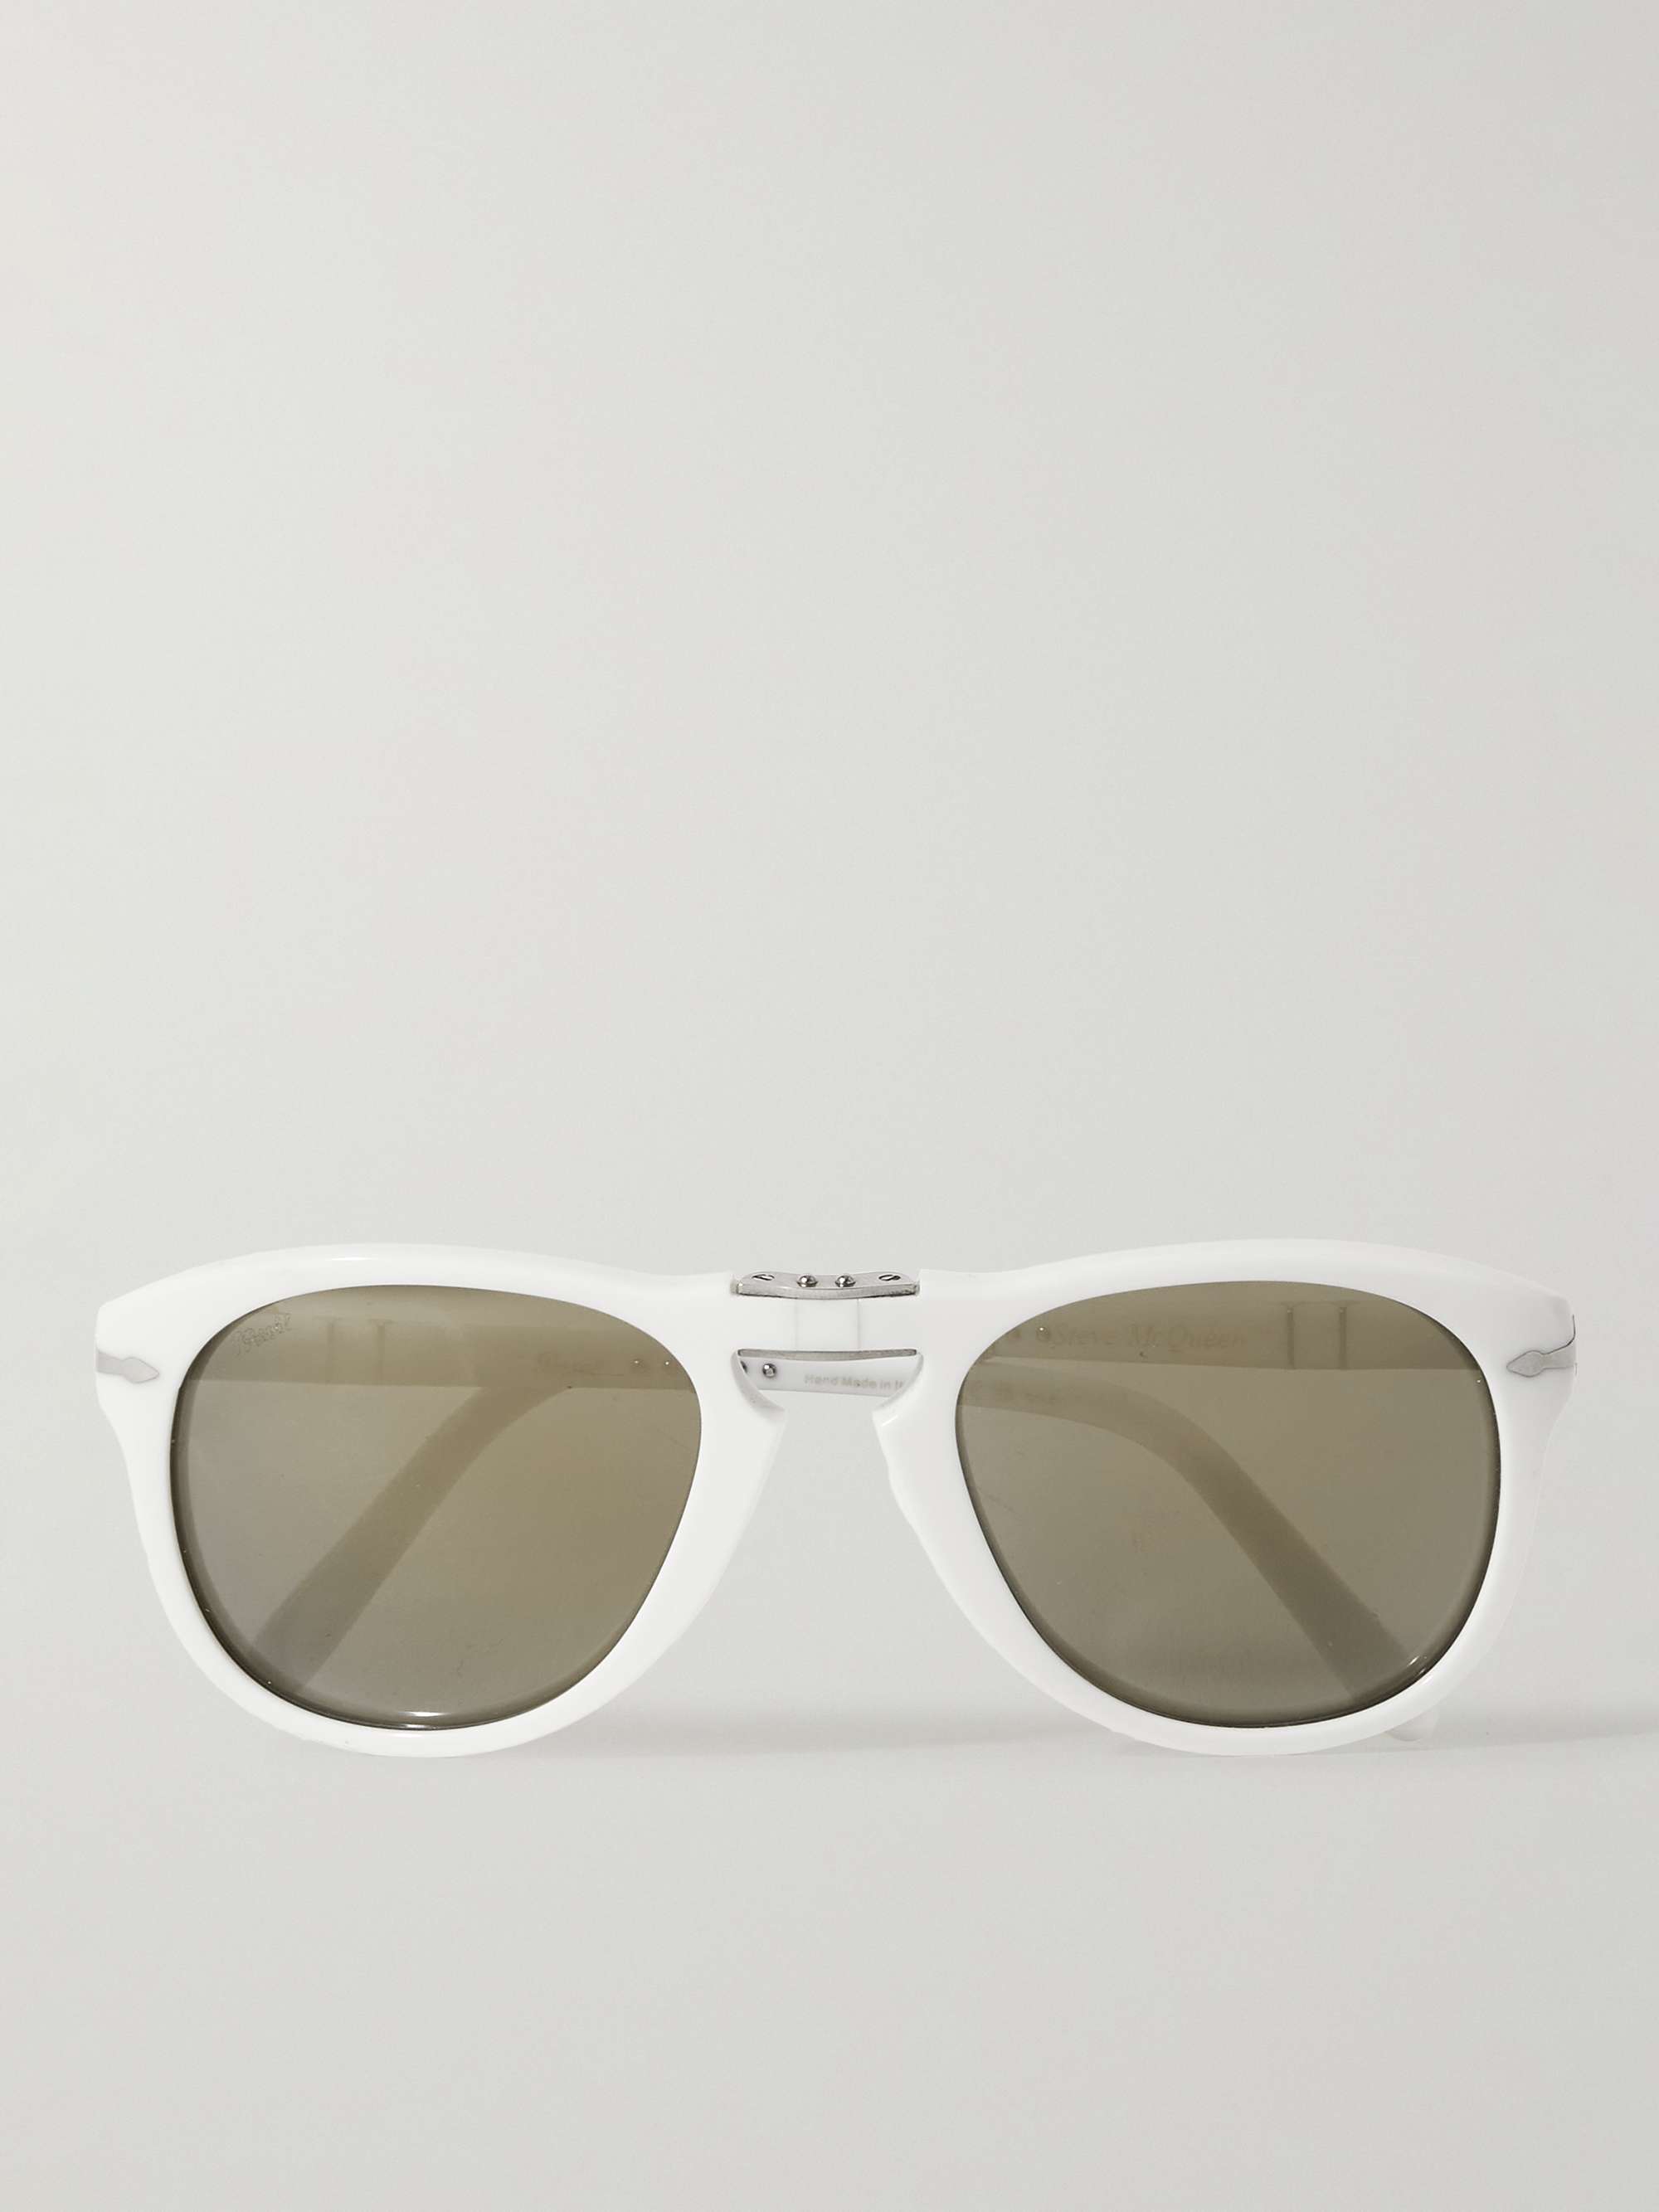 أبيض نظارات شمسية Steve McQueen من الأسيتات بإطار دائري قابل للطي | PERSOL  | MR PORTER